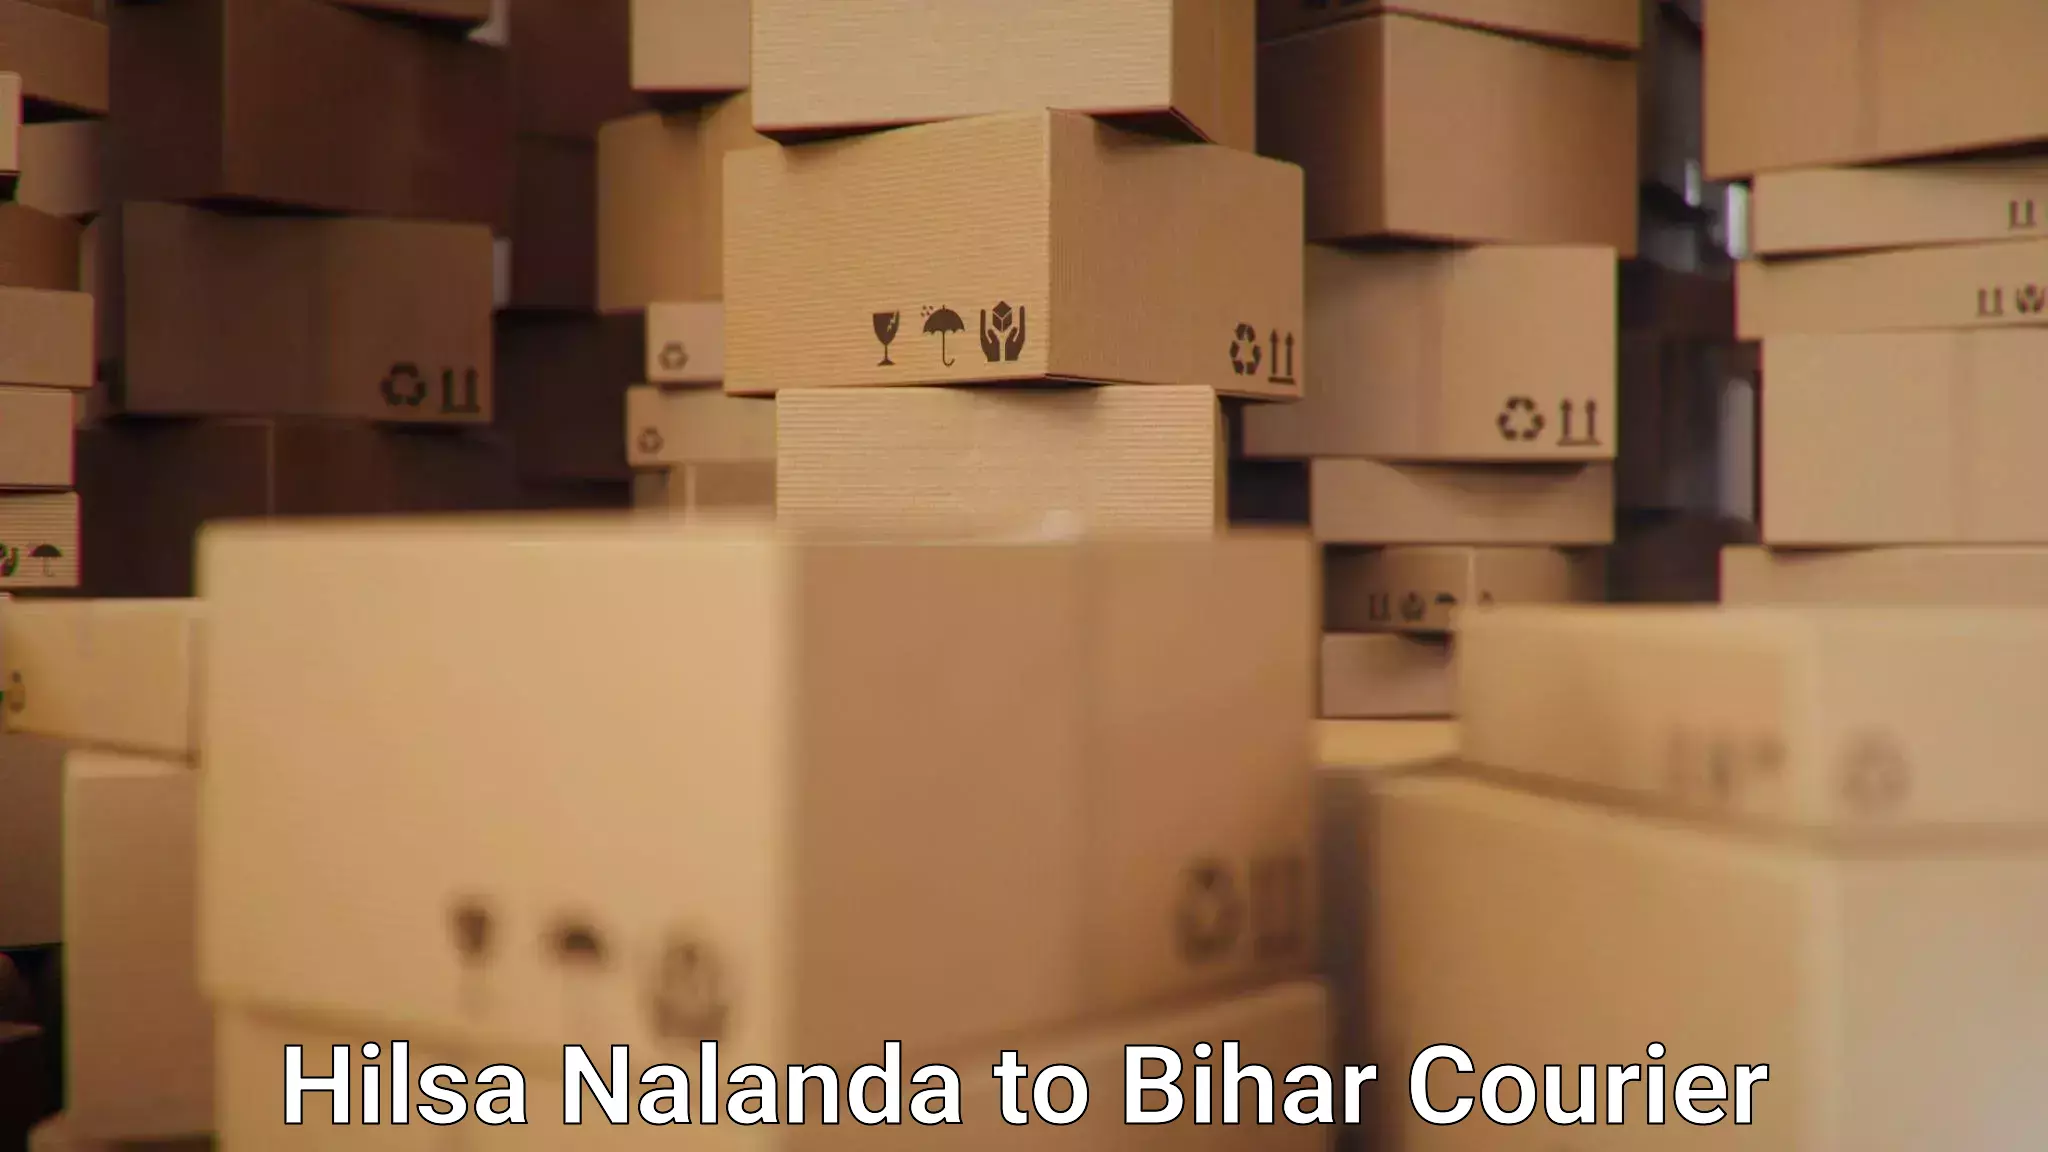 Premium delivery services Hilsa Nalanda to Muzaffarpur